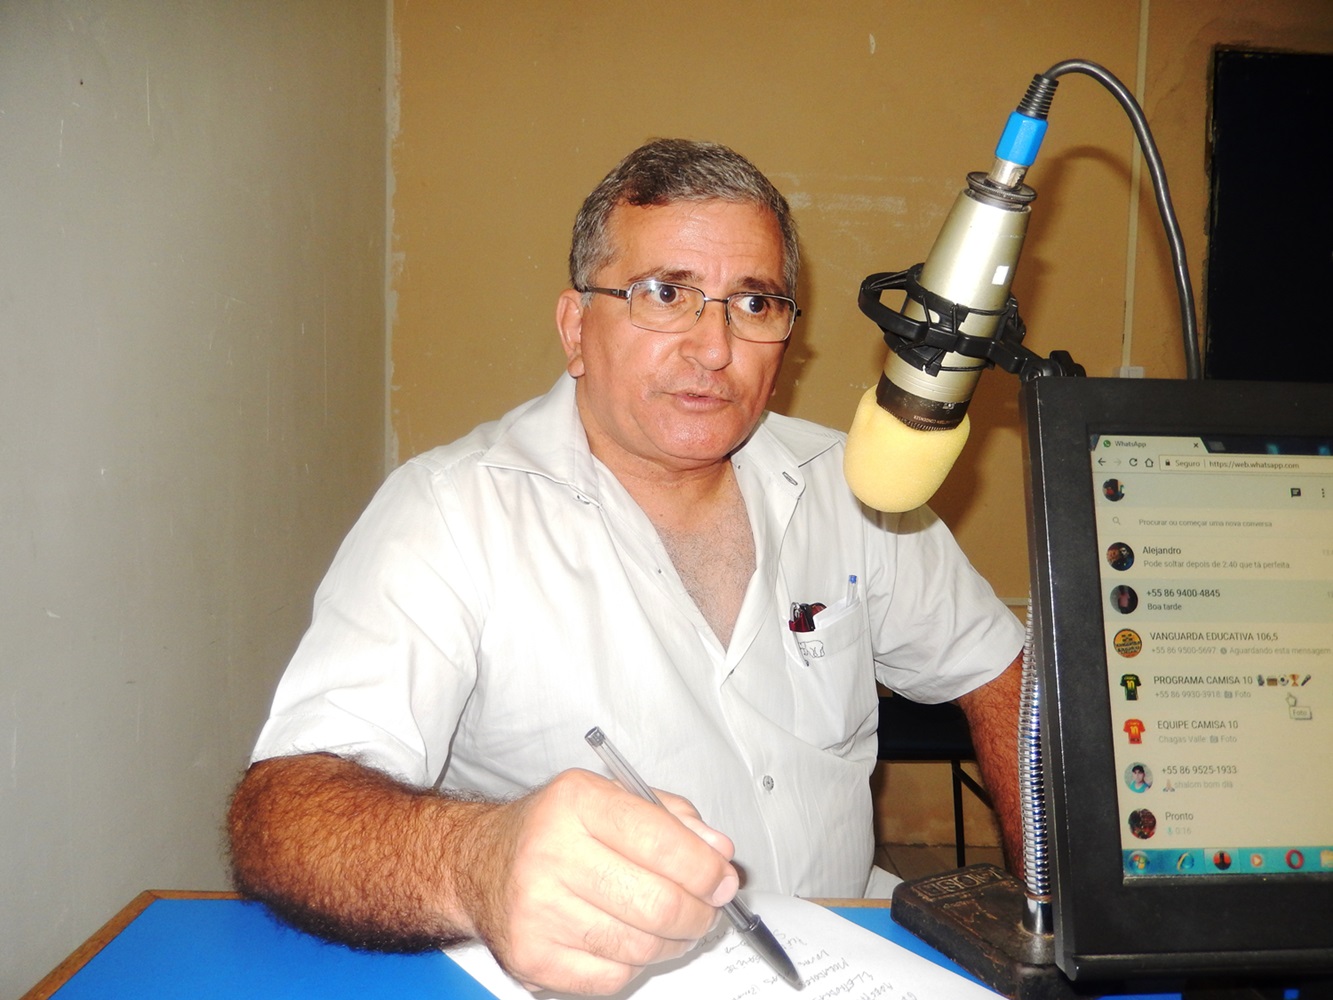 Dr. Paulo Henrique esclarece dúvidas sobre o Residencial Santa helena